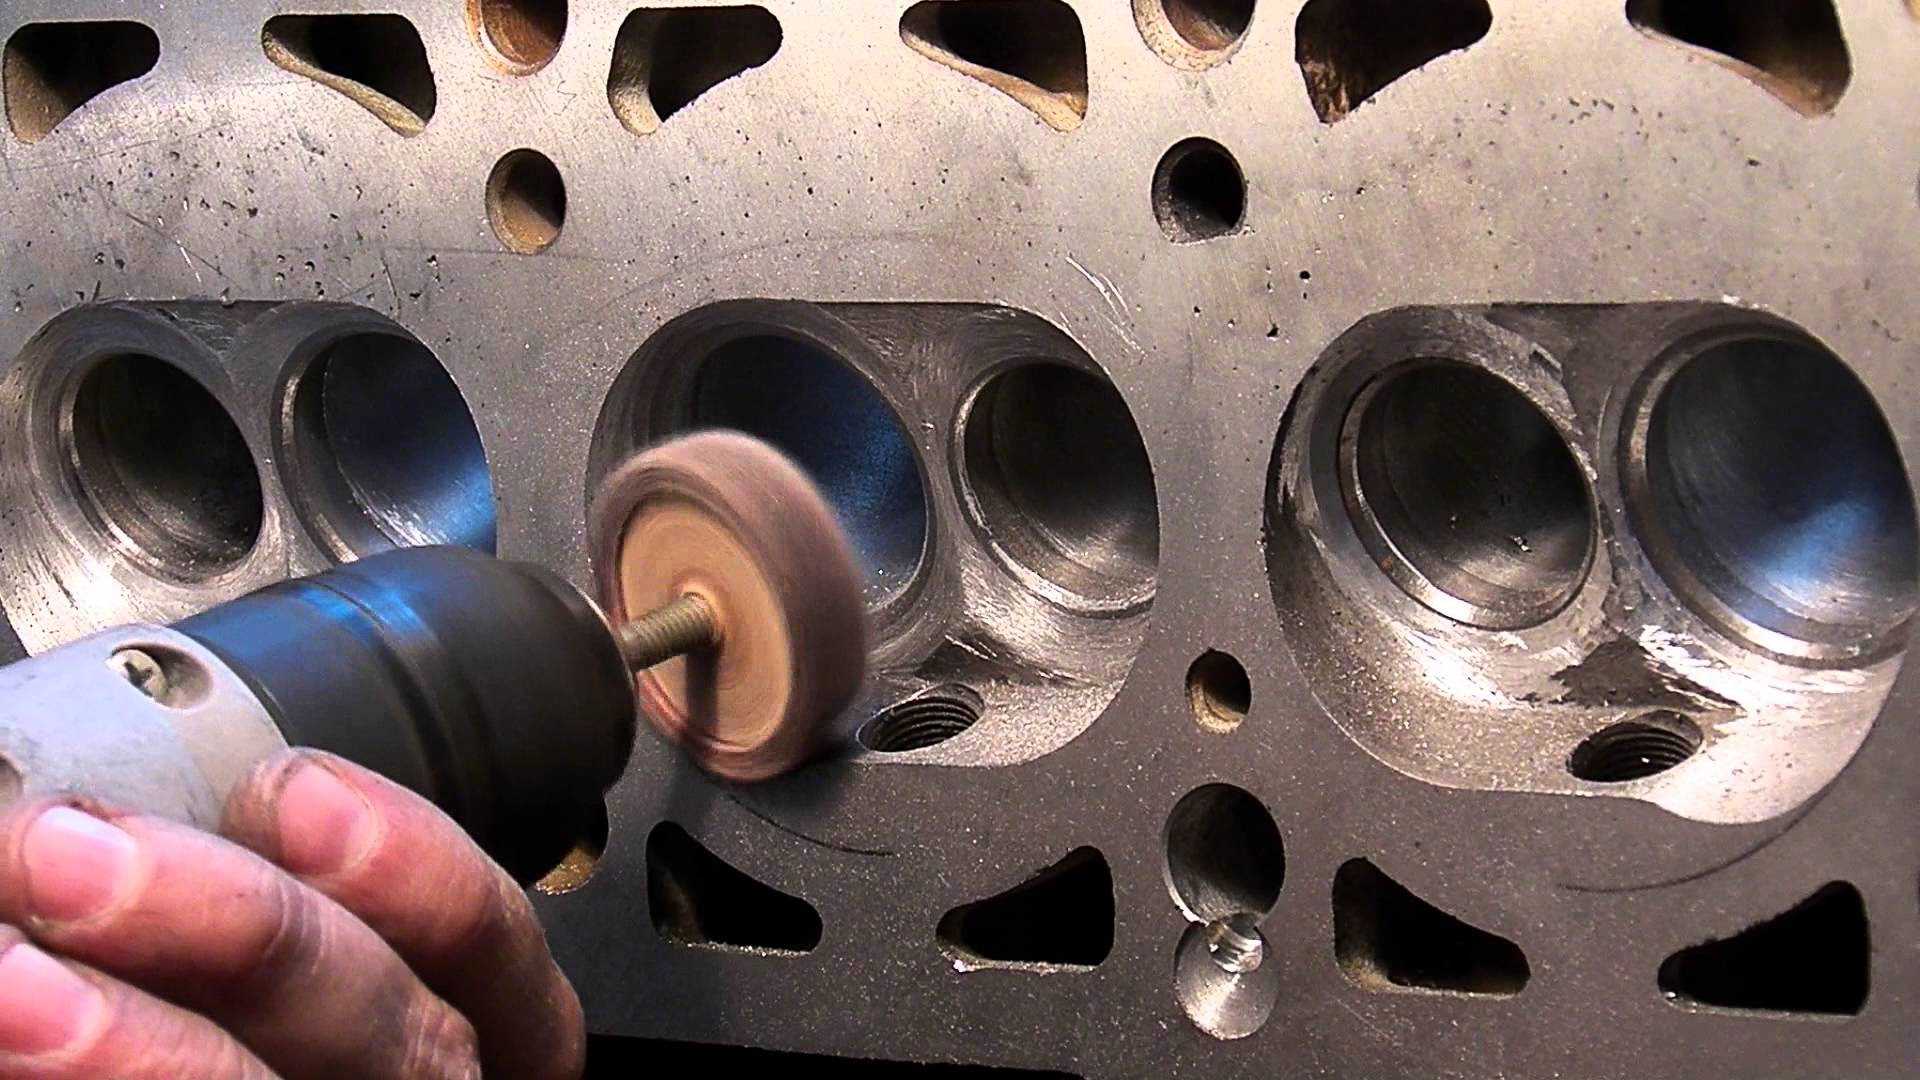 Как увеличить мощность двигателя ваз-2114 8 клапанов: фото, видео